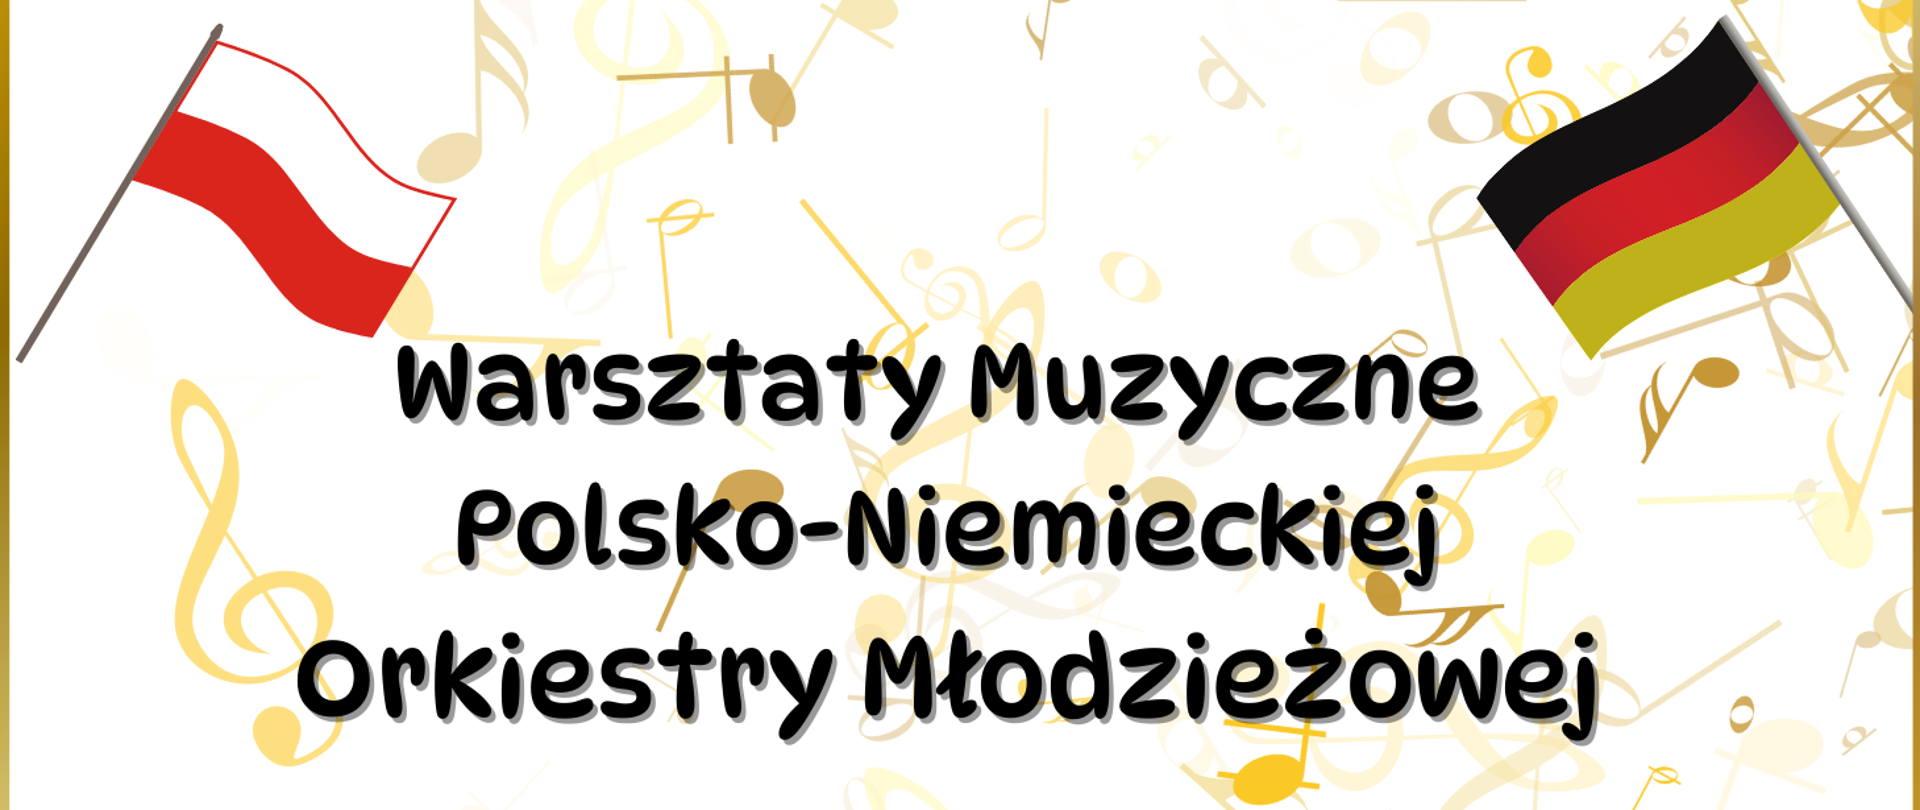 Na tle kolorowych nutek oraz dwóch flag - Polskiej i Niemieckiej znajduje się napis: Warsztaty Orkiestry Polsko - Niemieckiej.